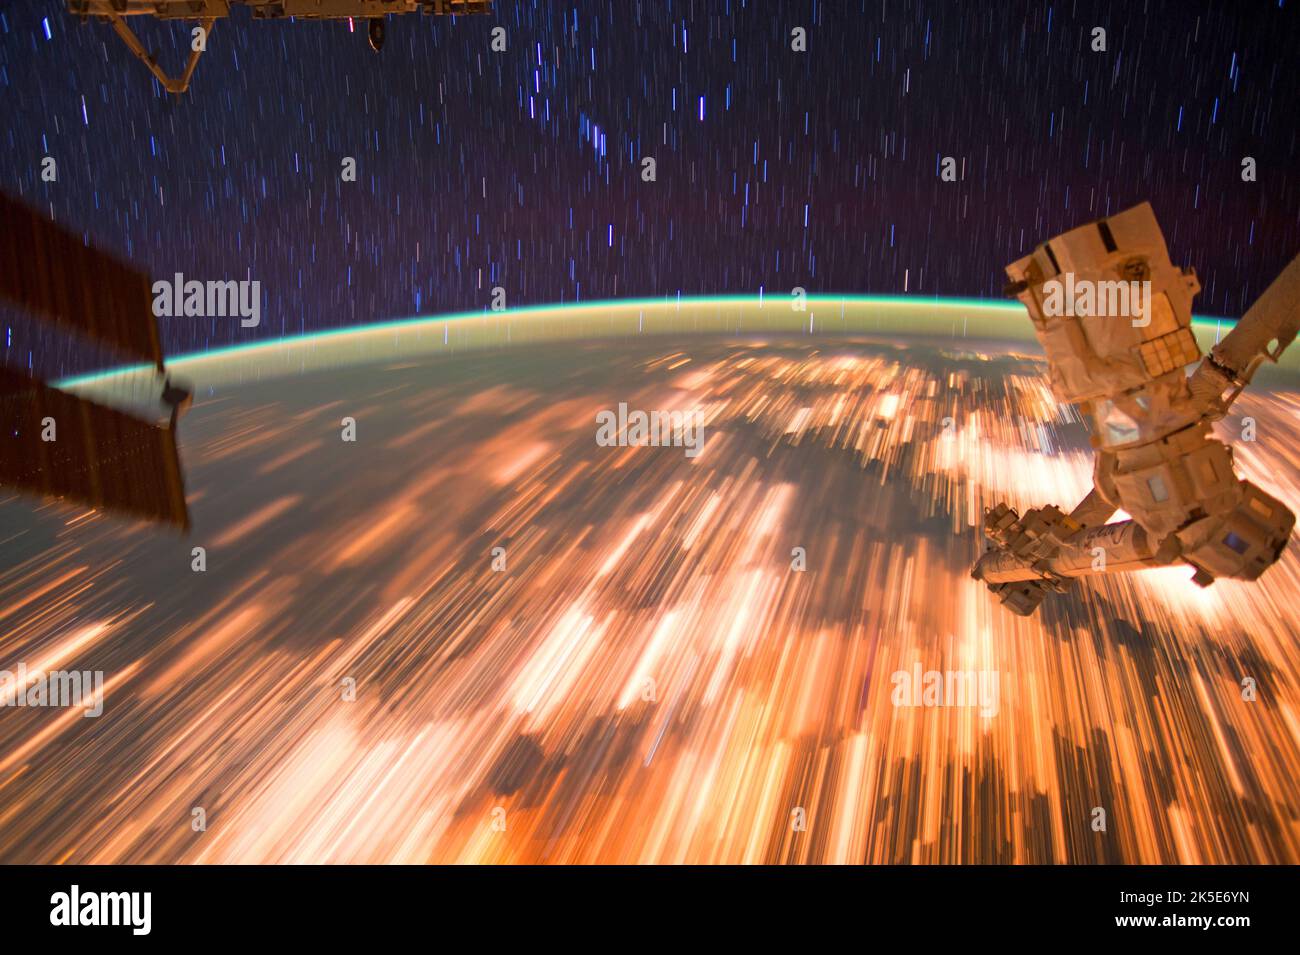 Astronauten auf der Internationalen Raumstation haben am 3. Oktober 2016 eine Reihe unglaublicher Sternpfade-Bilder aufgenommen, als sie mit einer Umlaufbahn von 17.500 Meilen pro Stunde umkreisten. Die Station umkreist die Erde alle 90 Minuten, und Astronauten an Bord sehen durchschnittlich 16 Sonnenauf- und -untergänge alle 24 Stunden. Eine einzigartige Version eines Originalbildes der NASA. Quelle: NASA? Stockfoto